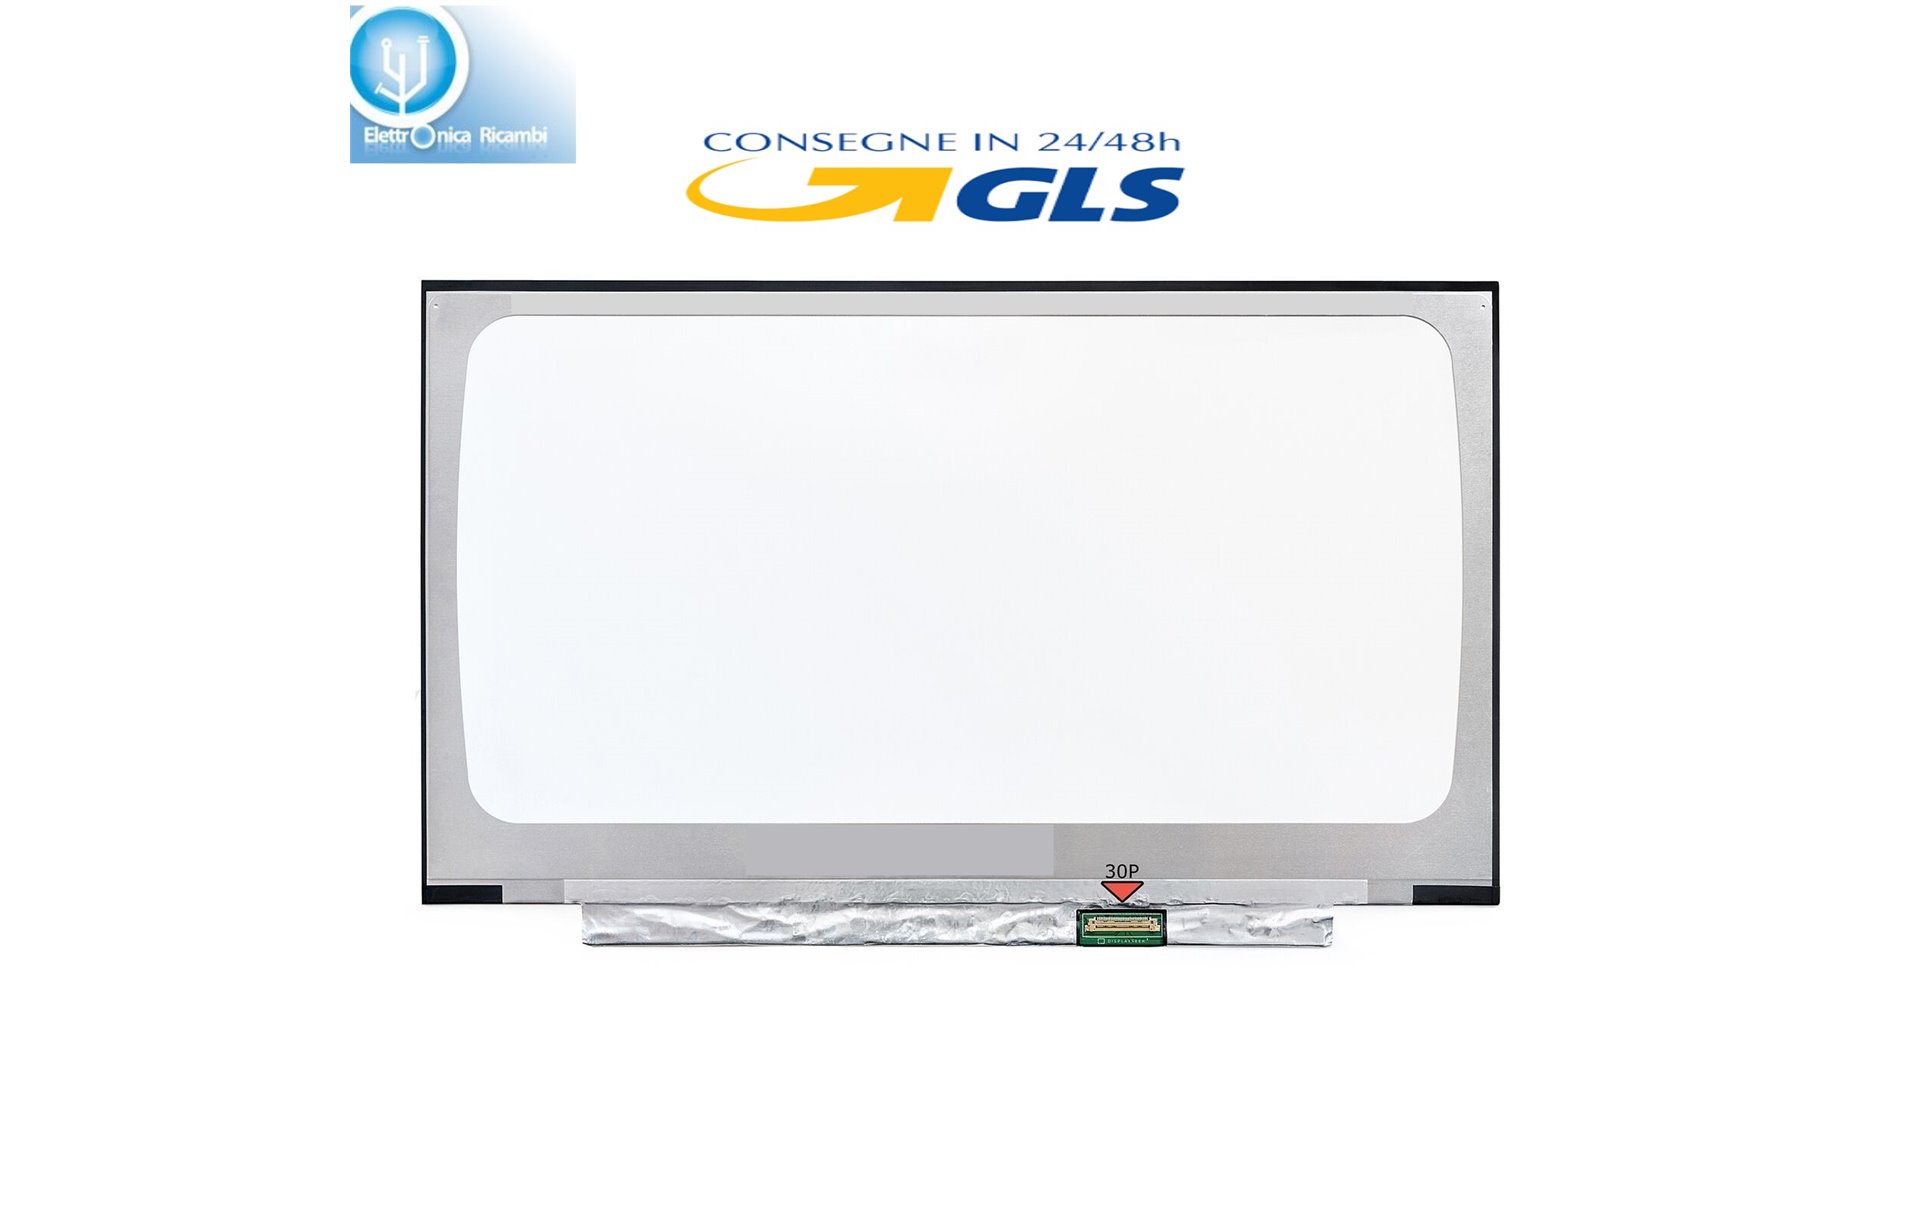 N140HGA-EA1 REV.C7 Display lcd schermo 14" led Slim 30 pin wxga  (1920X1080) IPS